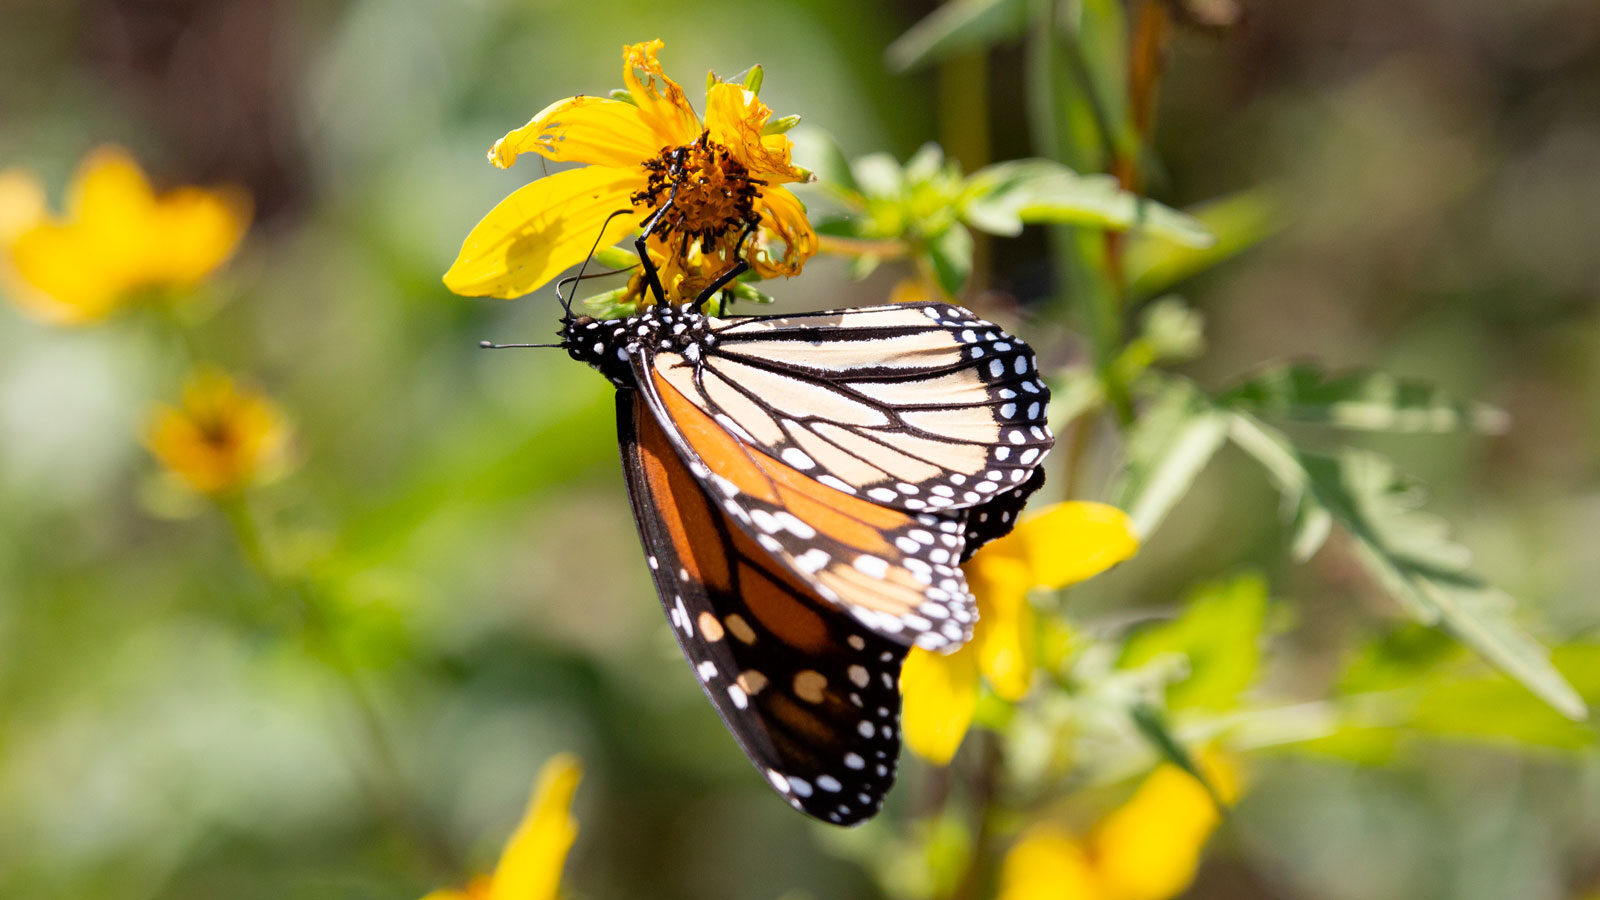 Monarch butterfly on a flower in a meadow